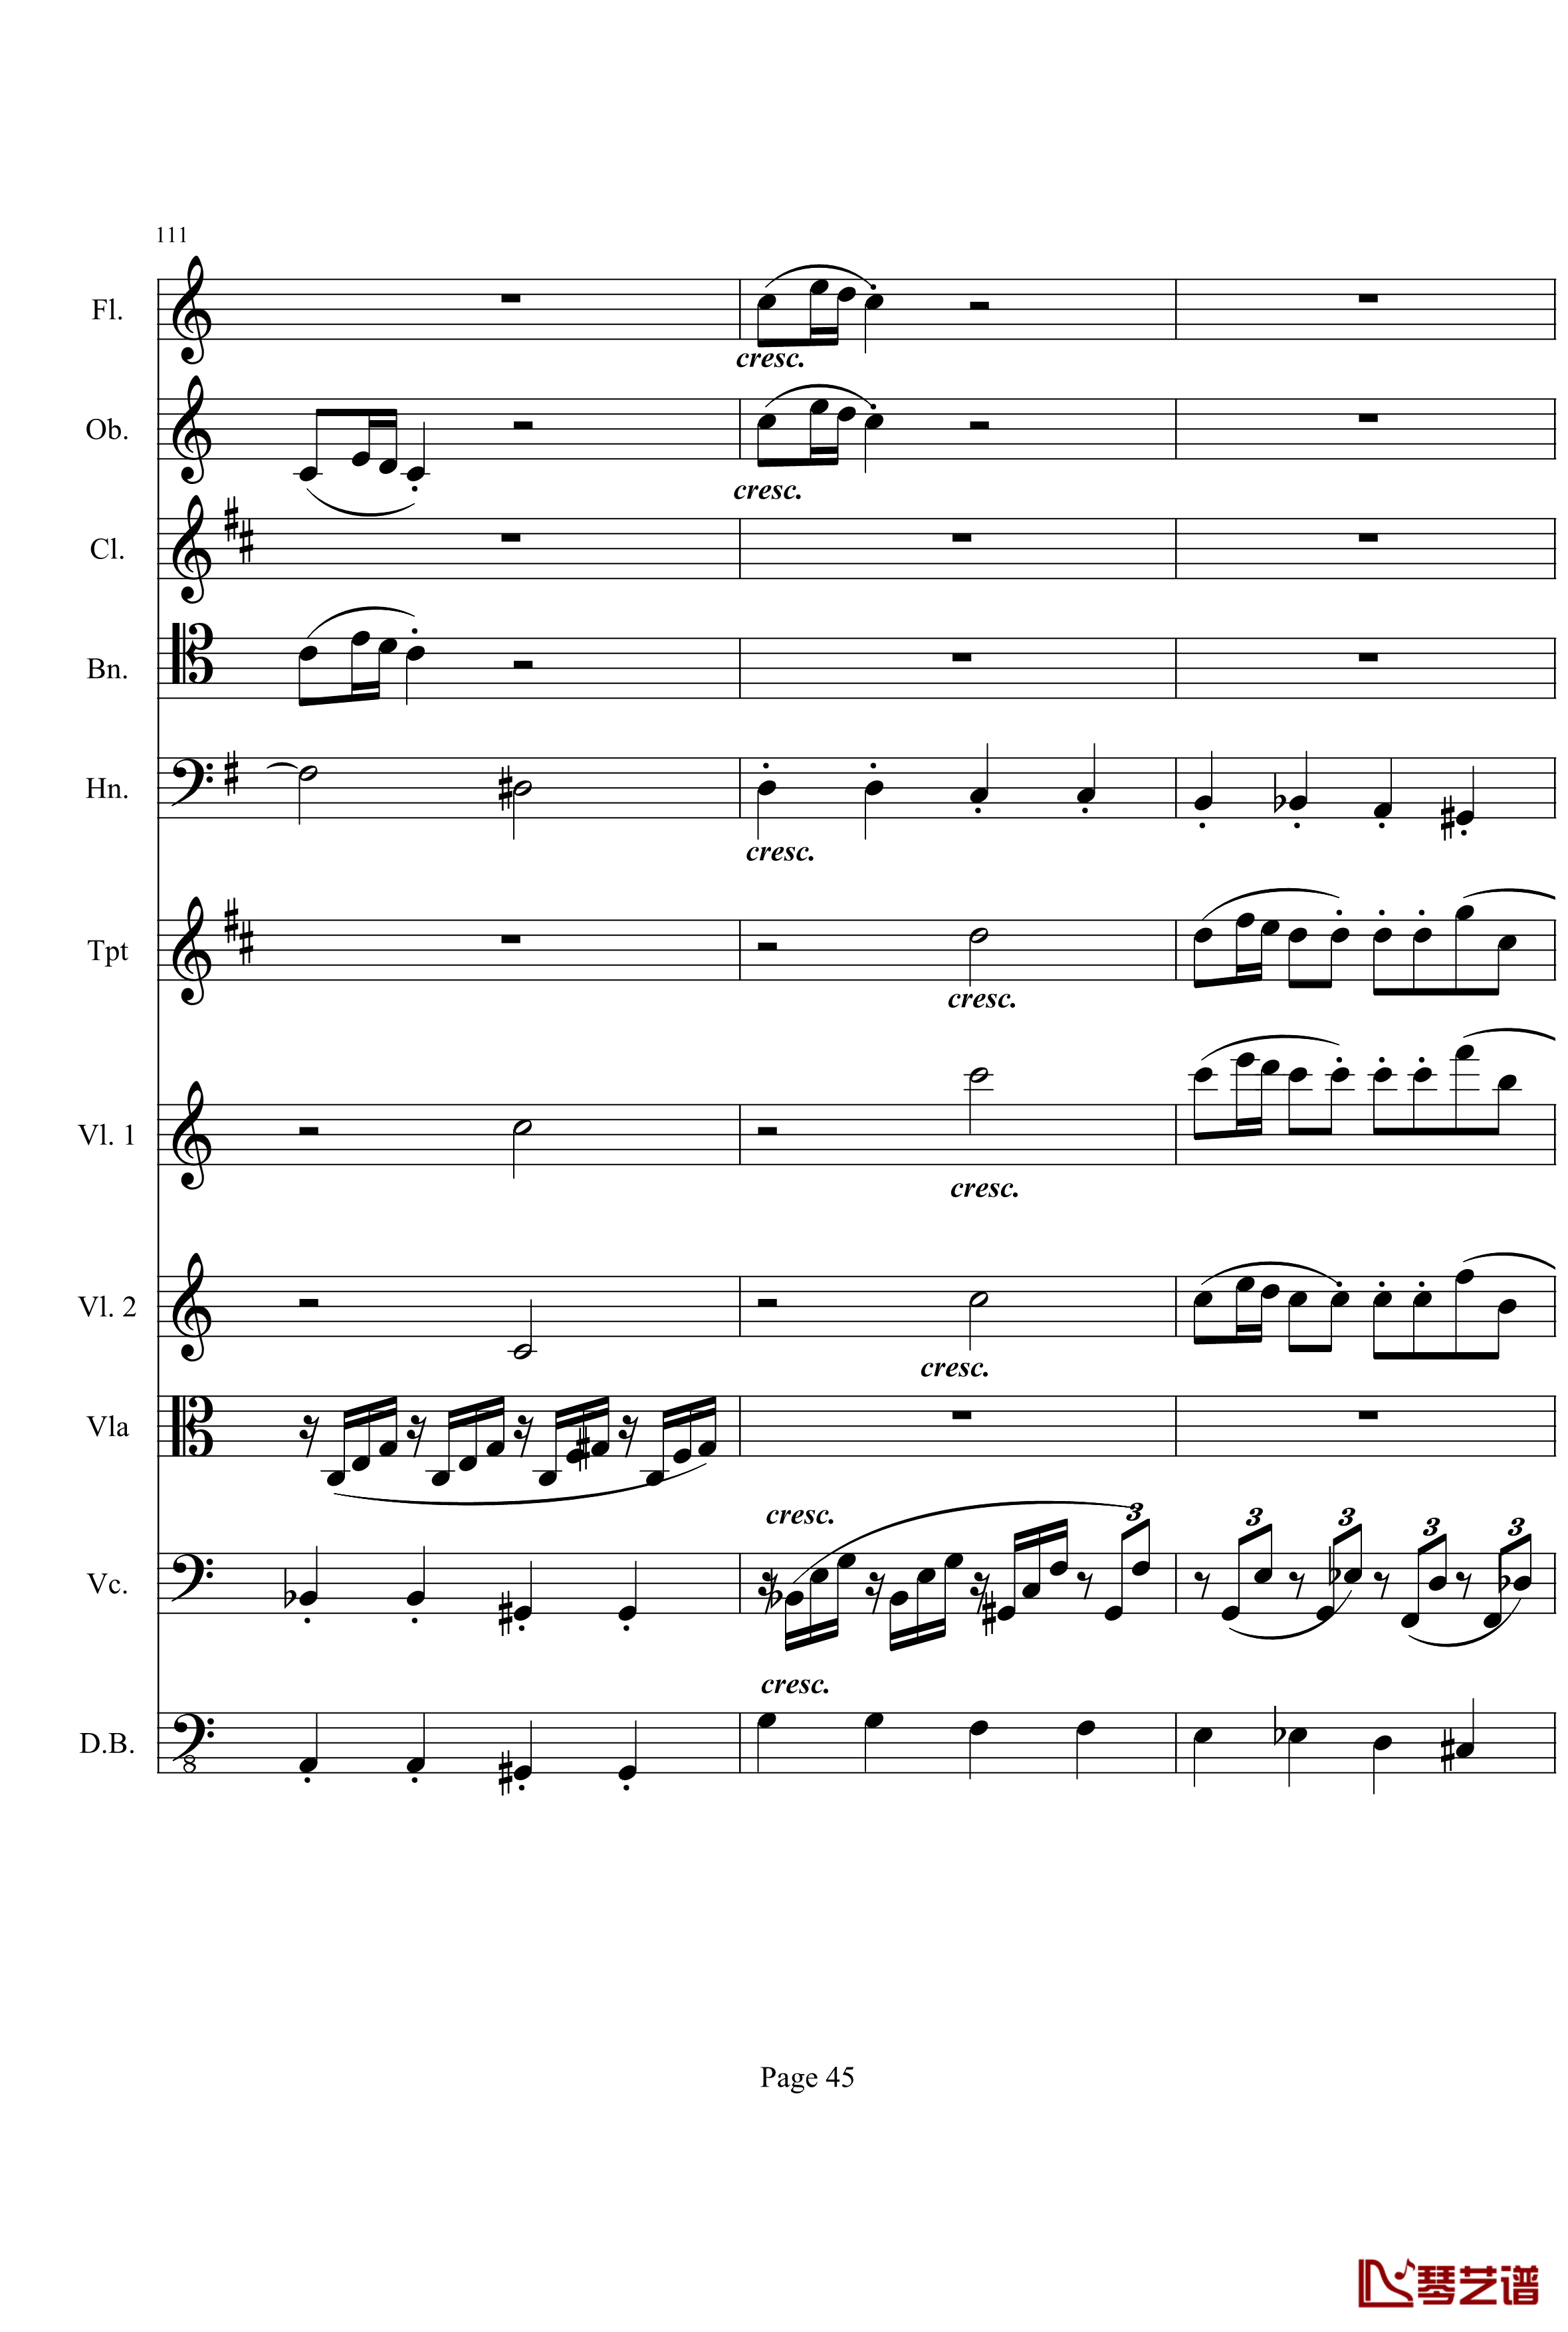 奏鸣曲之交响钢琴谱-第21-Ⅰ-贝多芬-beethoven45